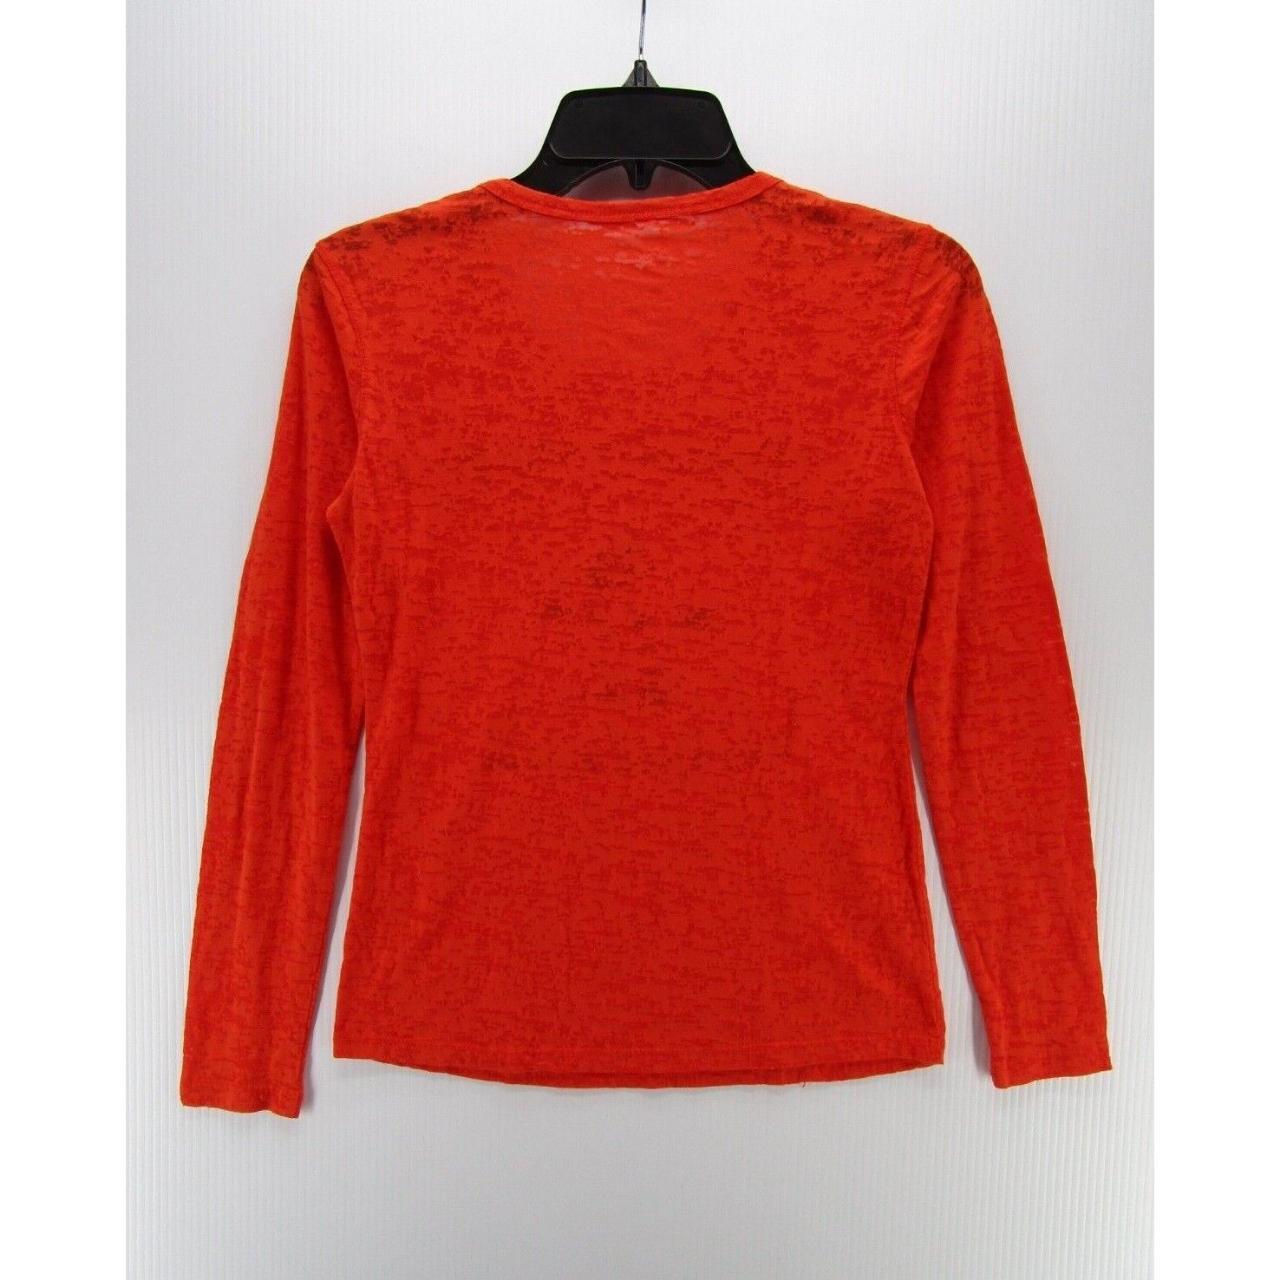 Product Image 4 - Syracuse Orange Shirt Women Small